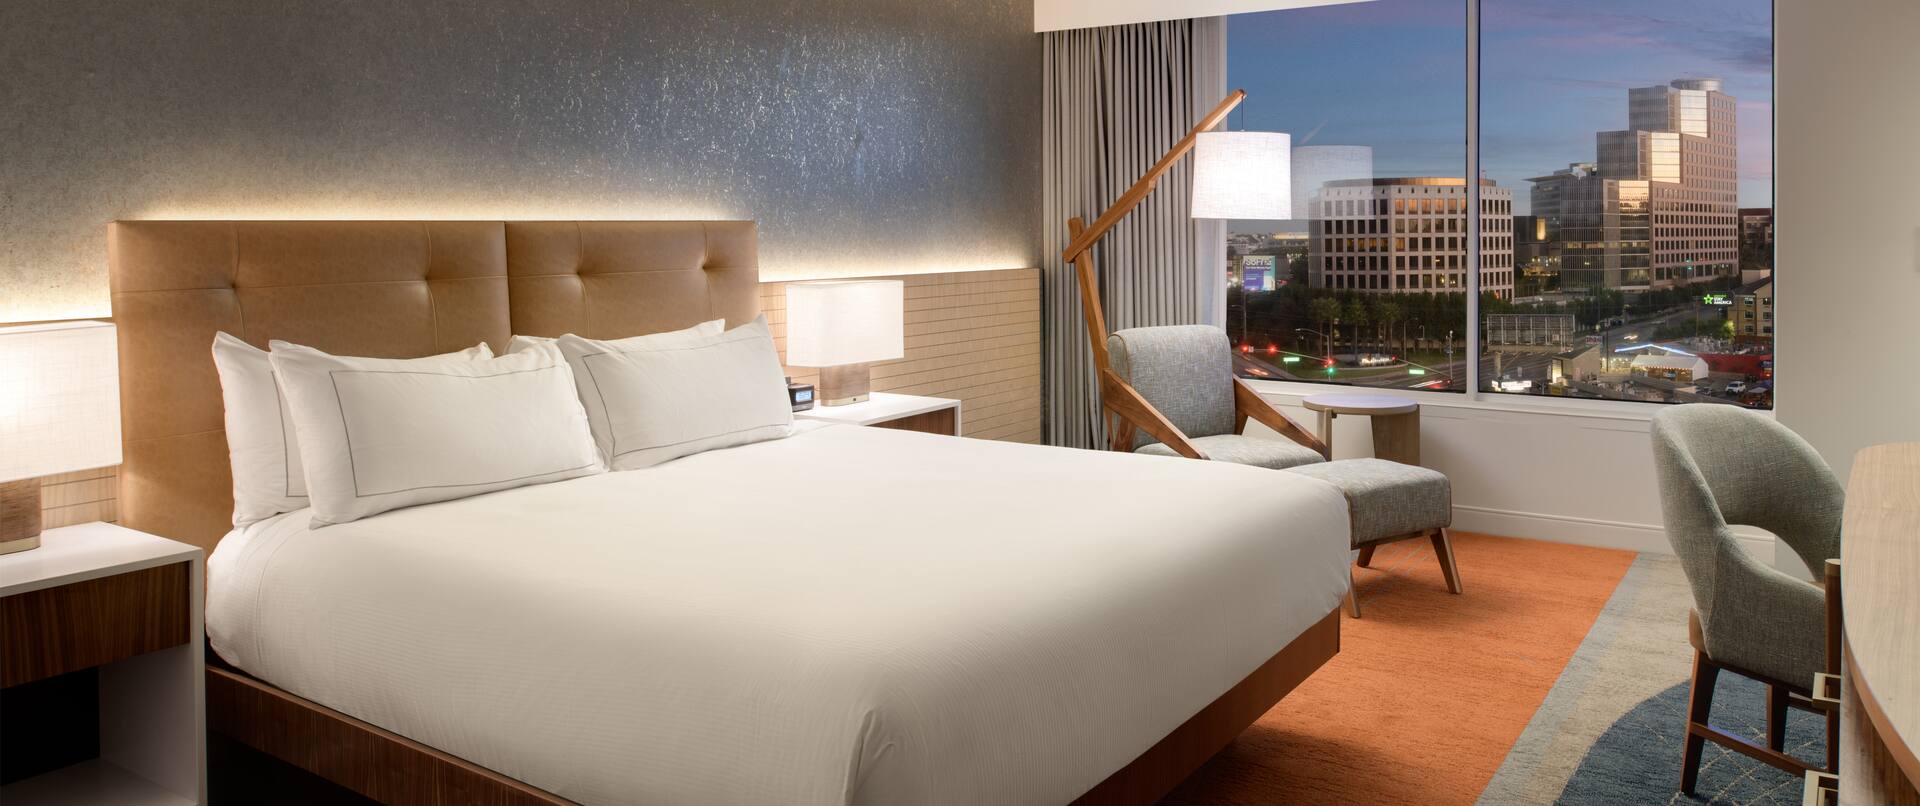 Dormitorio con cama king en una de las plantas más altas del hotel